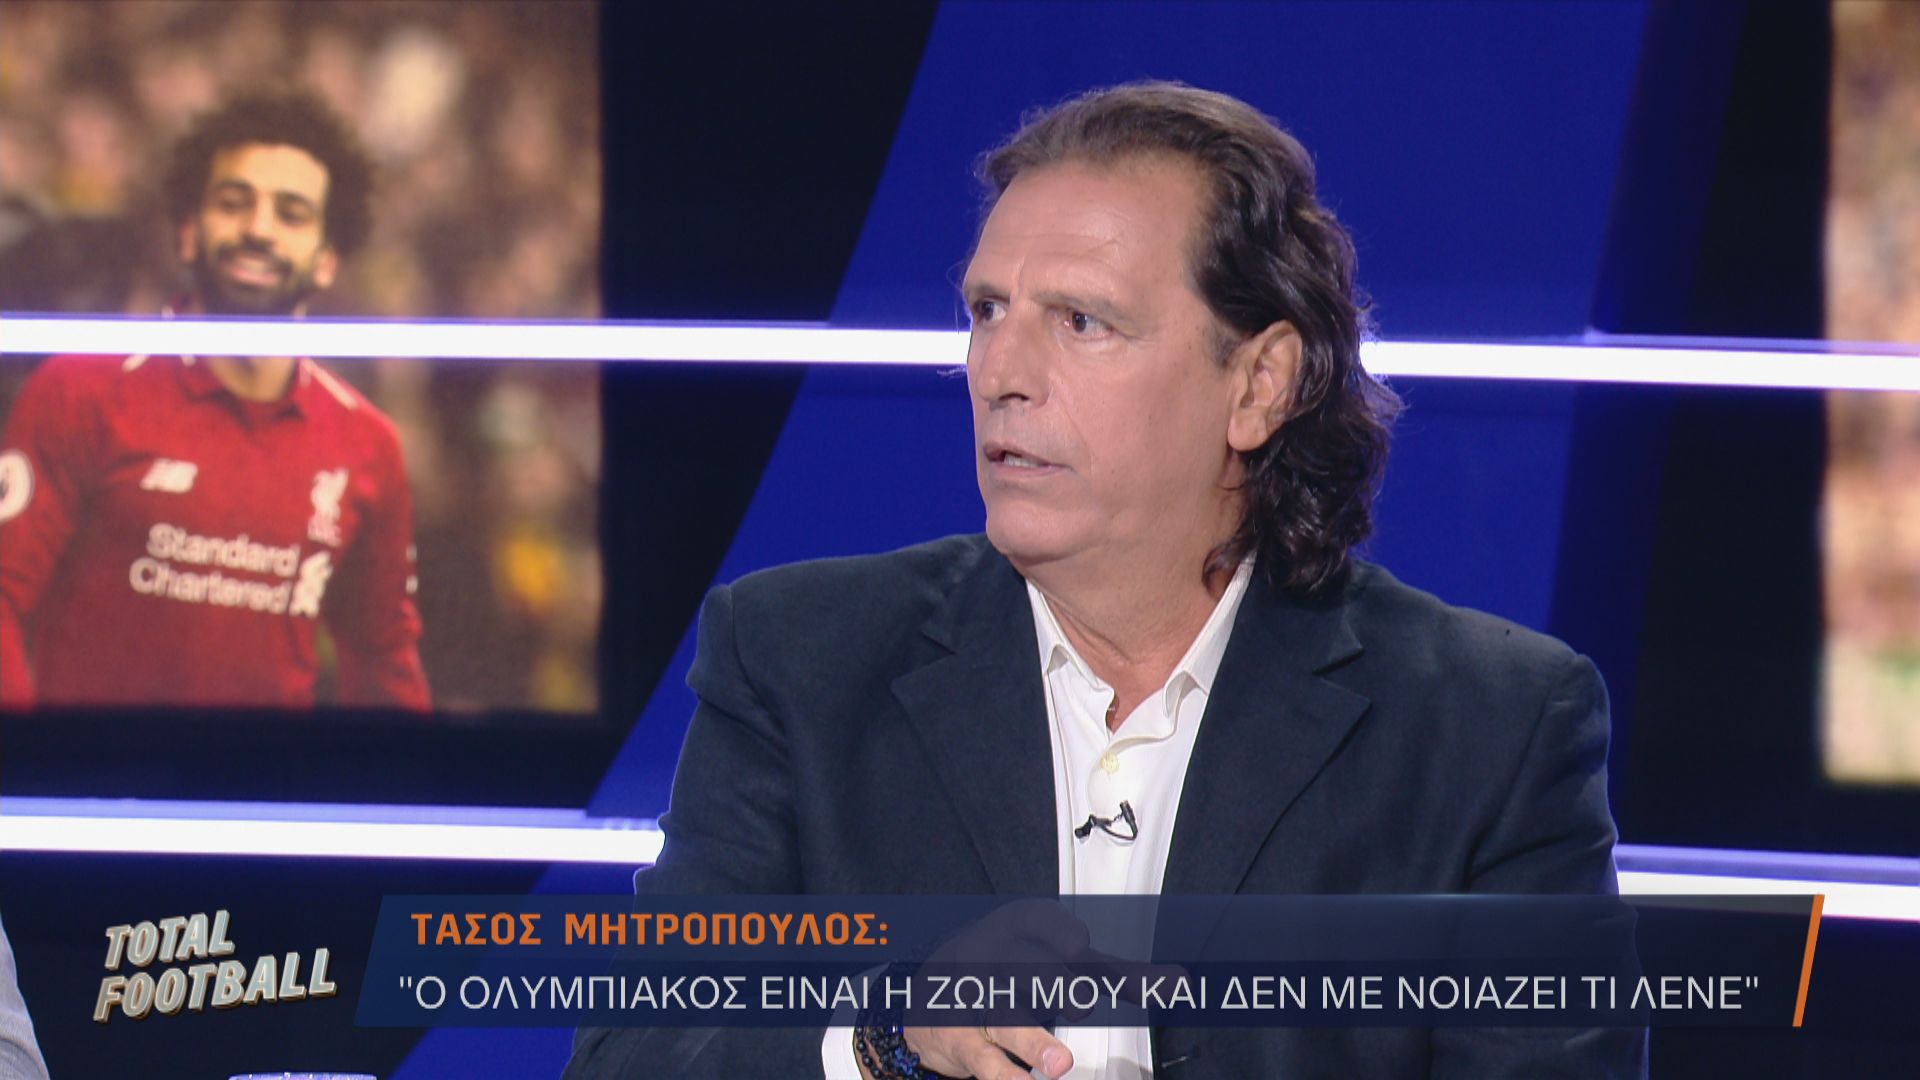 Ο Τάσος Μητρόπουλος ξεσπάθωσε στο Open TV